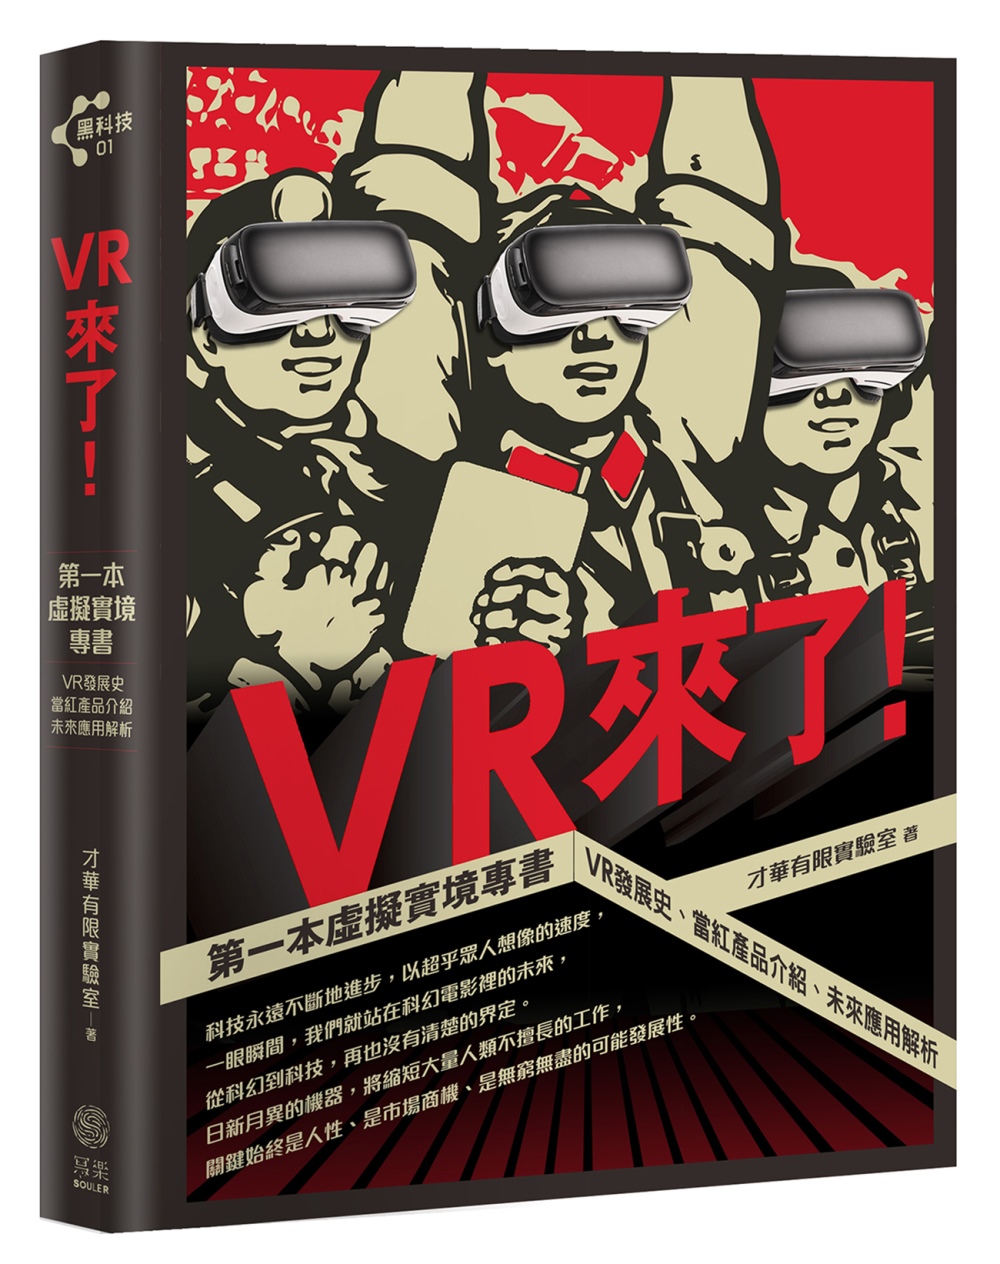 VR來了!：第一本虛擬實境專書 VR發展史、當紅產品介紹、未來應用解析【限量贈送VR精靈眼鏡】+【博客來獨家收納袋】